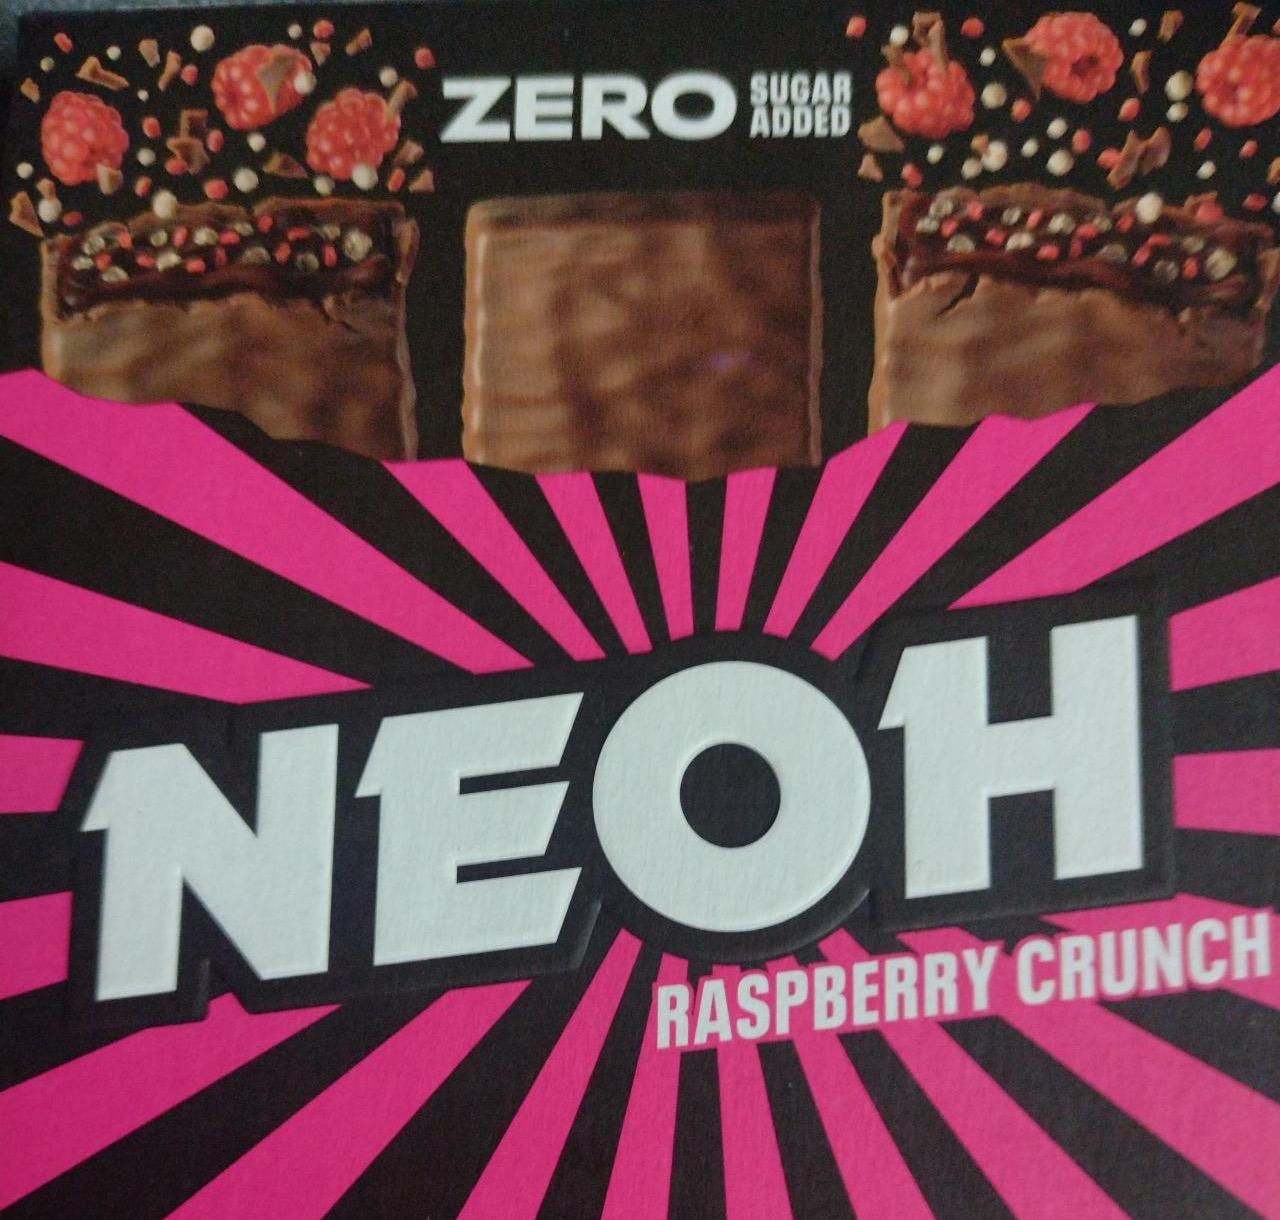 Zdjęcia - Neoh Raspberry Crunch zero sugar